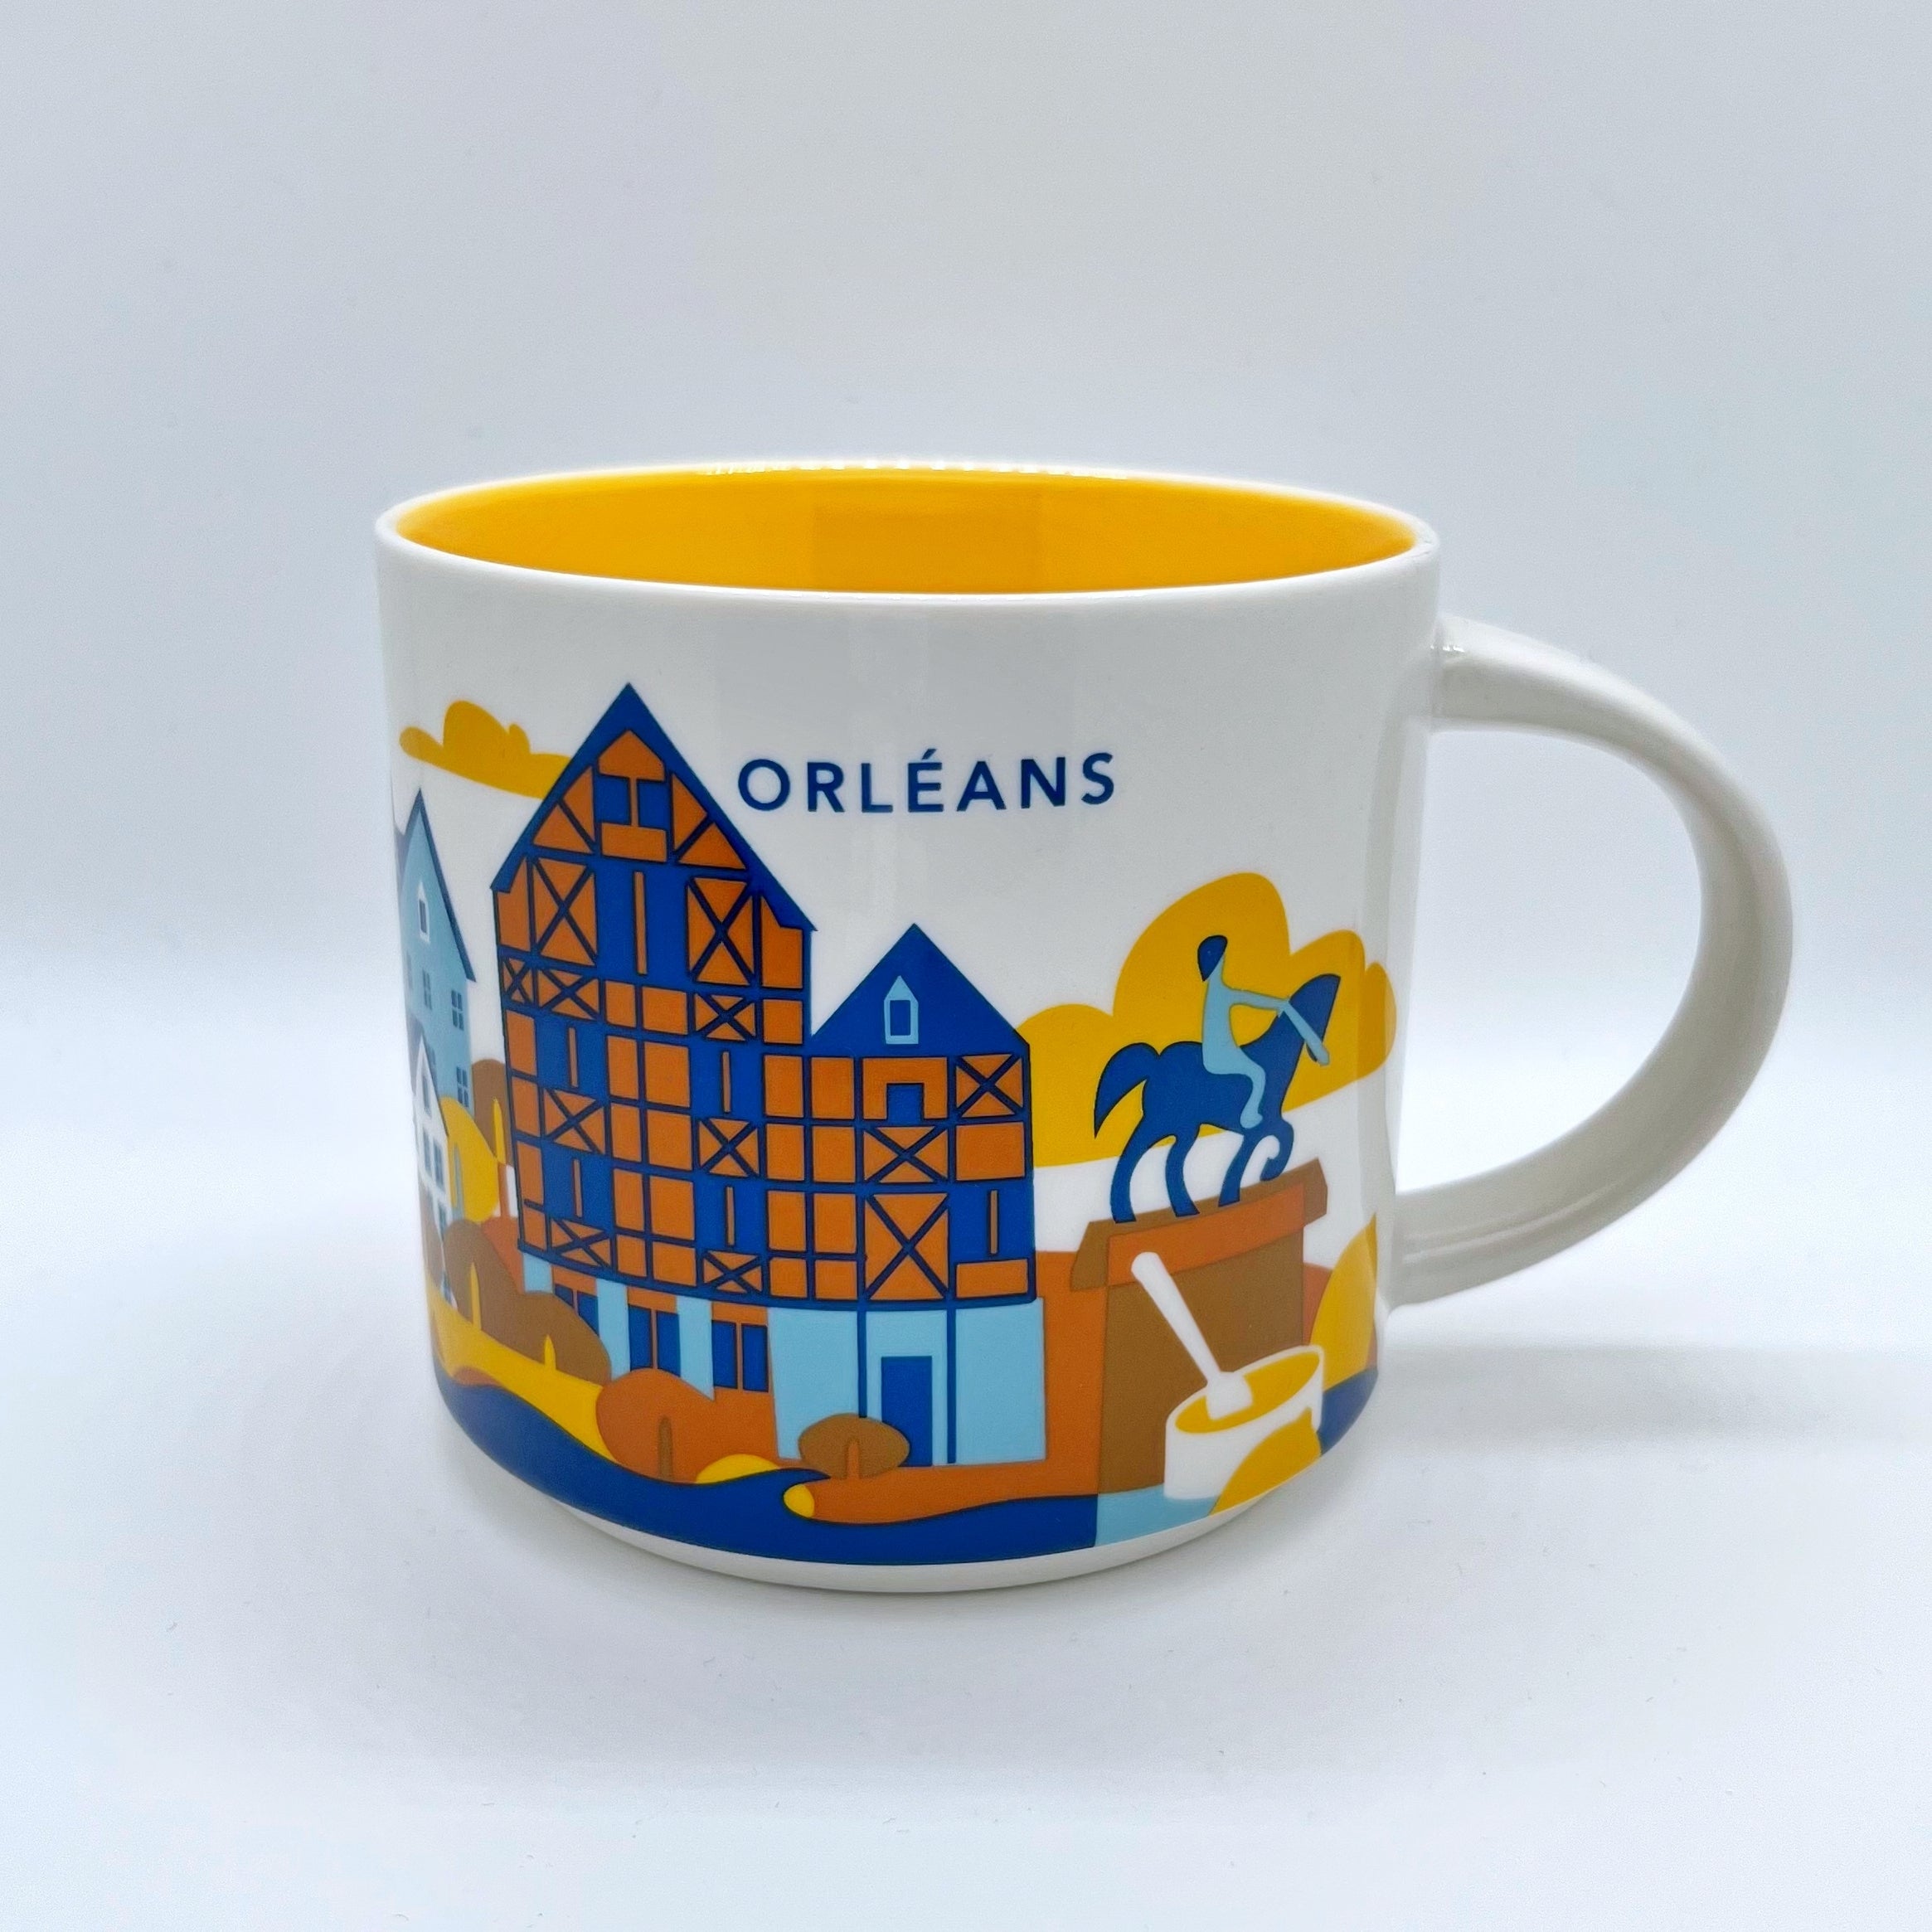 Kaffee Tee und Cappuccino Tasse von Starbucks mit gemalten Bildern aus der Stadt Orléans